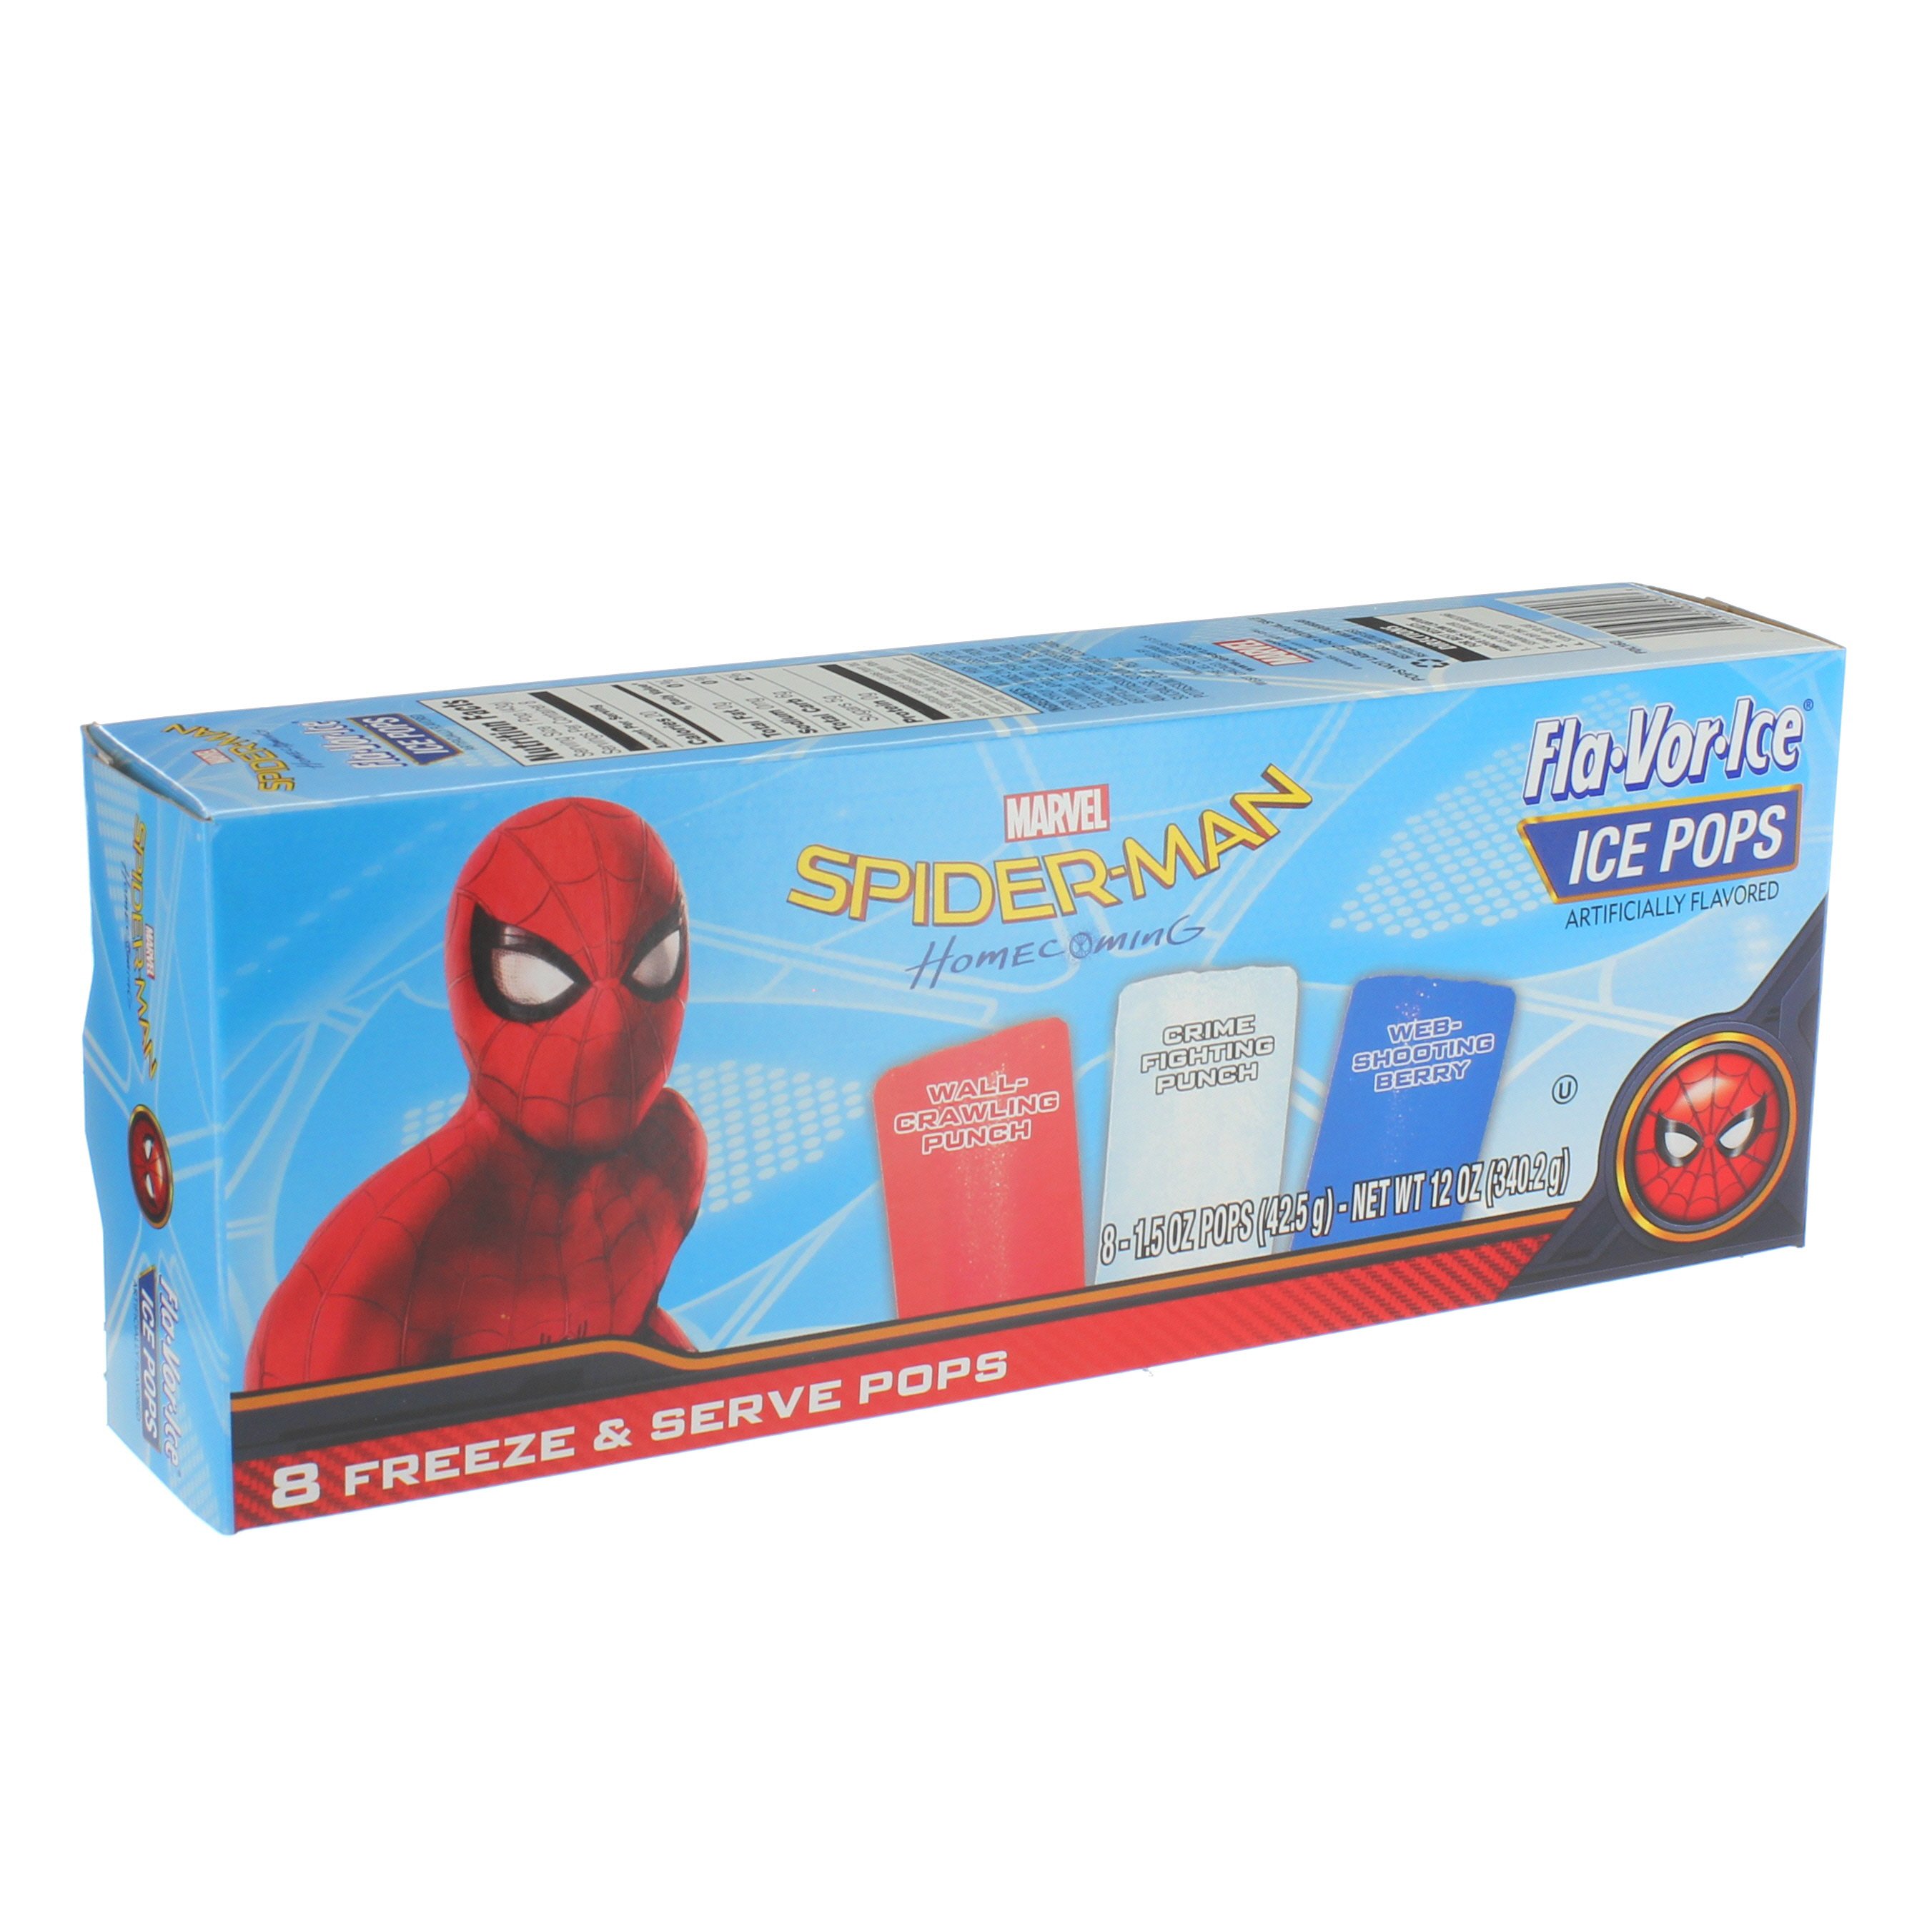 Fla-Vor-Ice Pops Spider-Man - Shop Bars & Pops at H-E-B